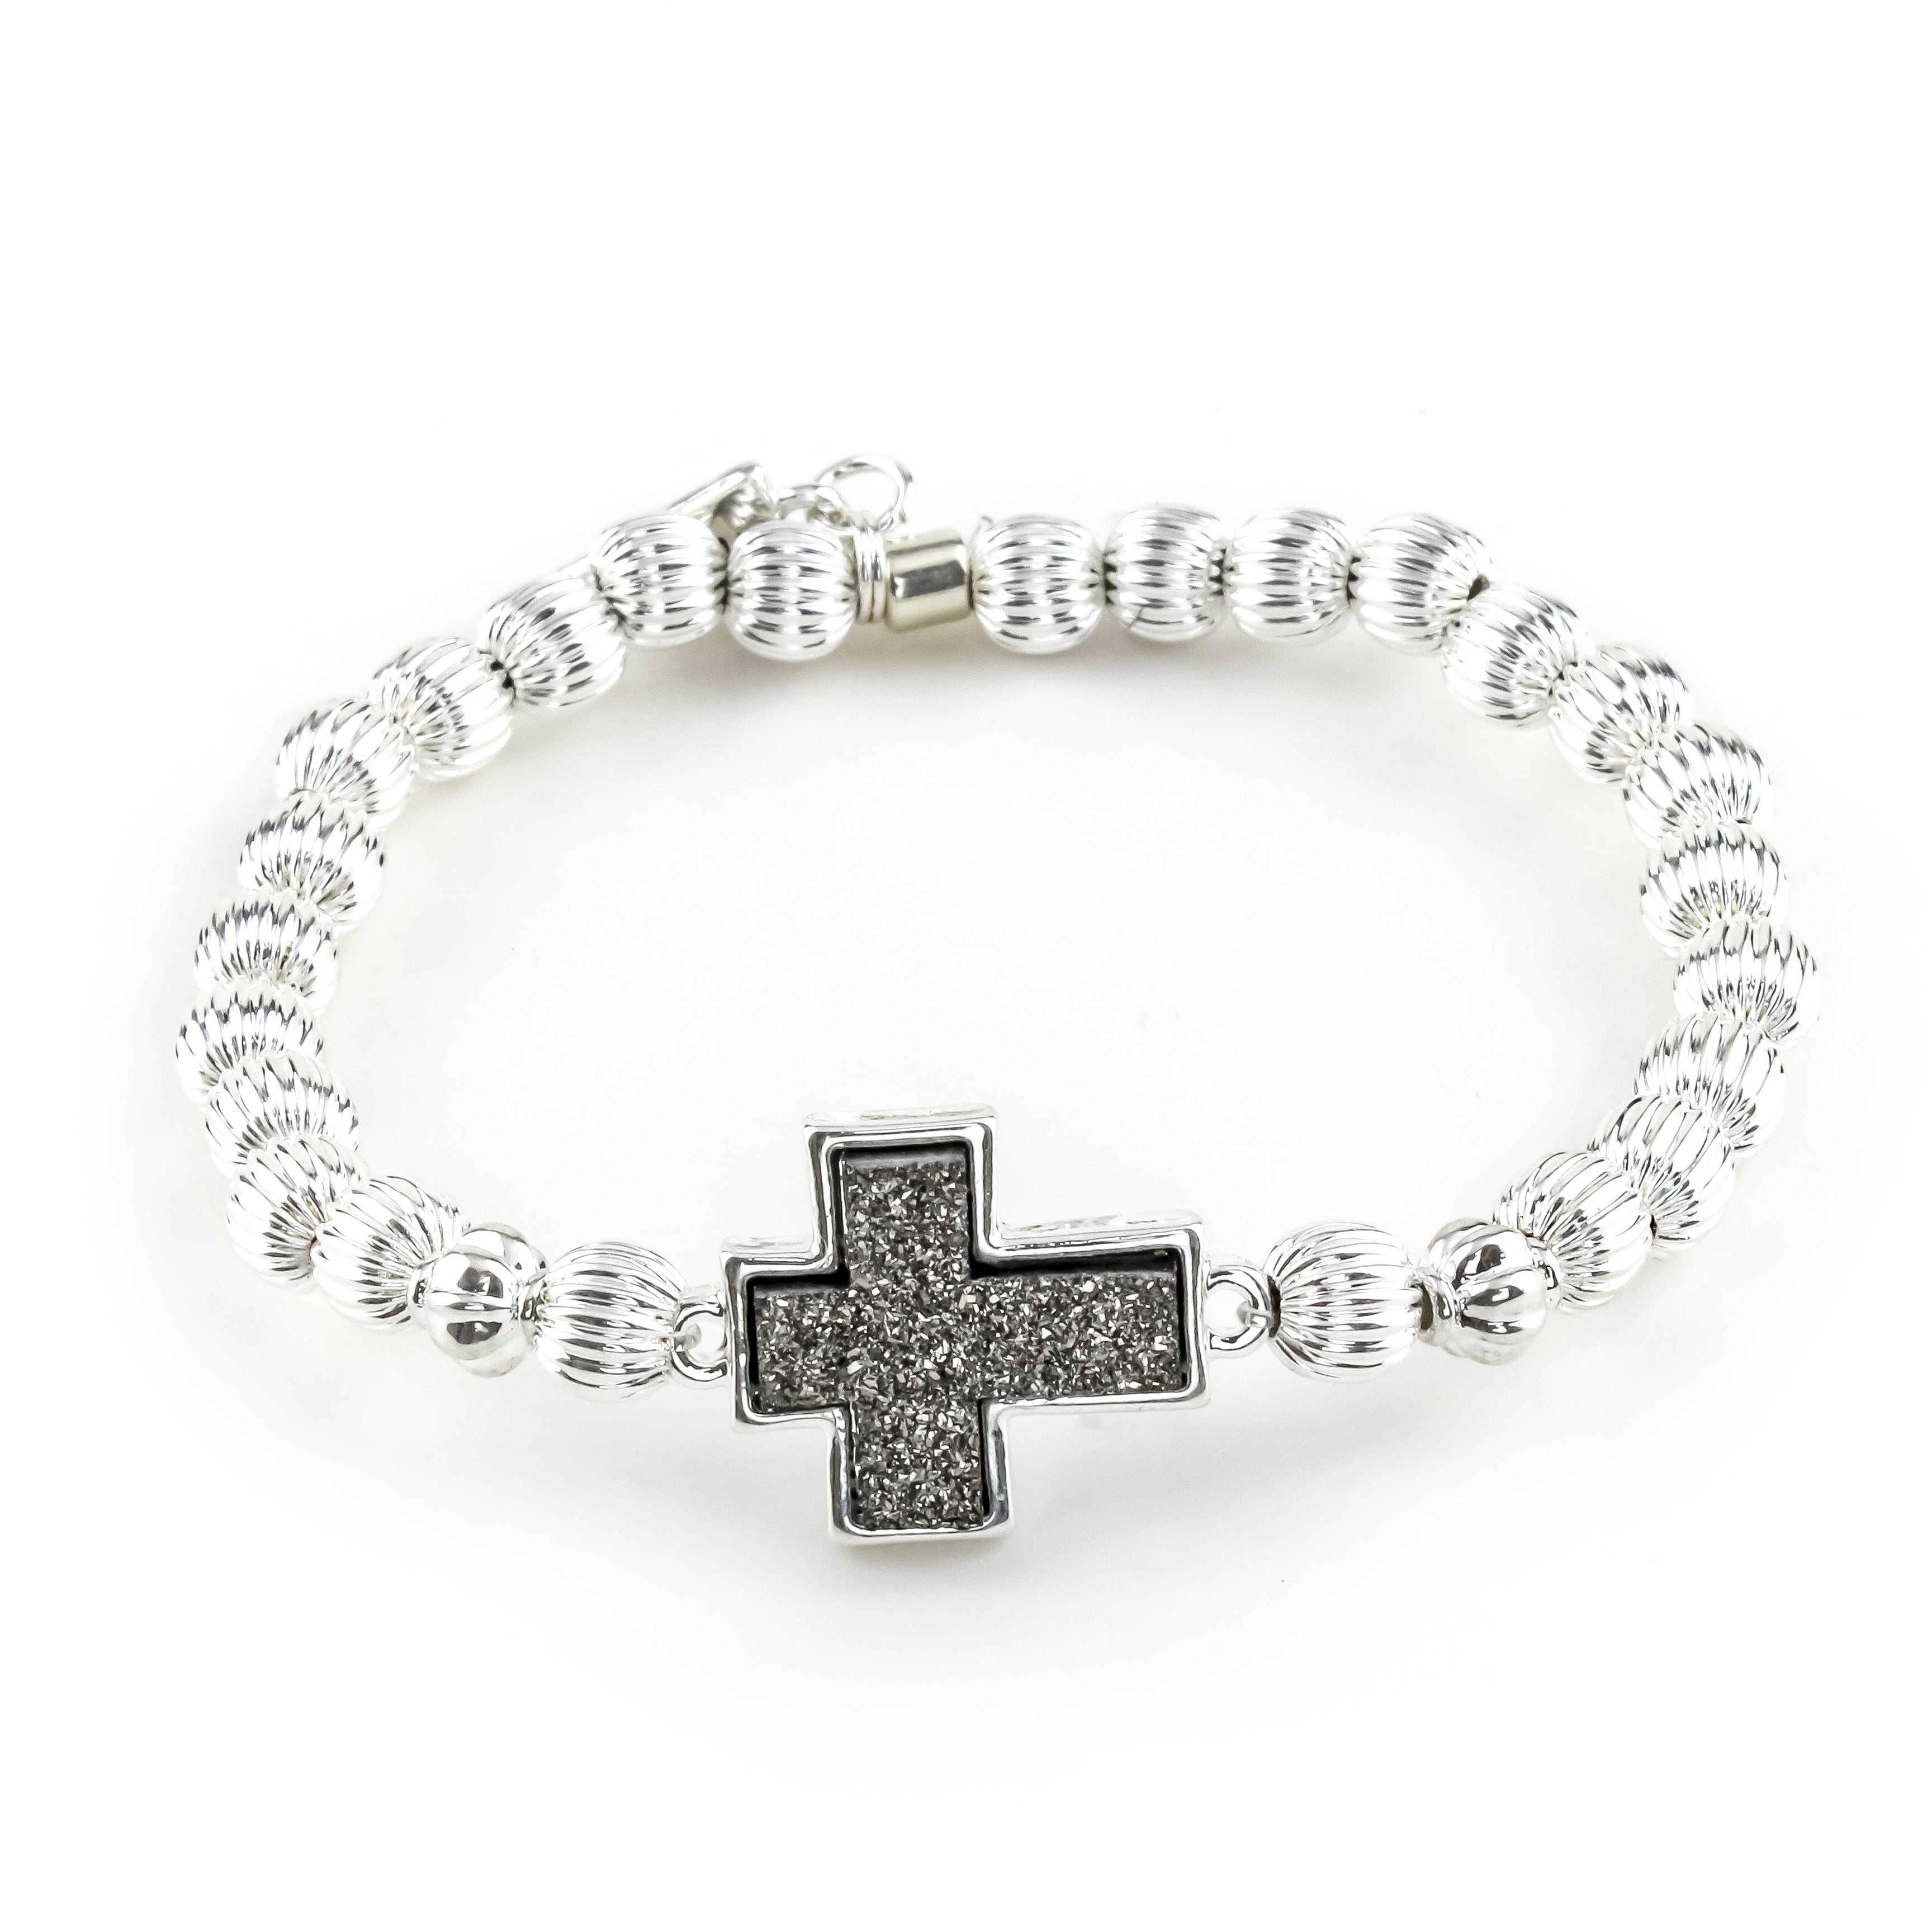 Silver Cross Jewelry Healing Yoga Gemstones Bracelet Matte Black Onyx - GEM+ SILVER